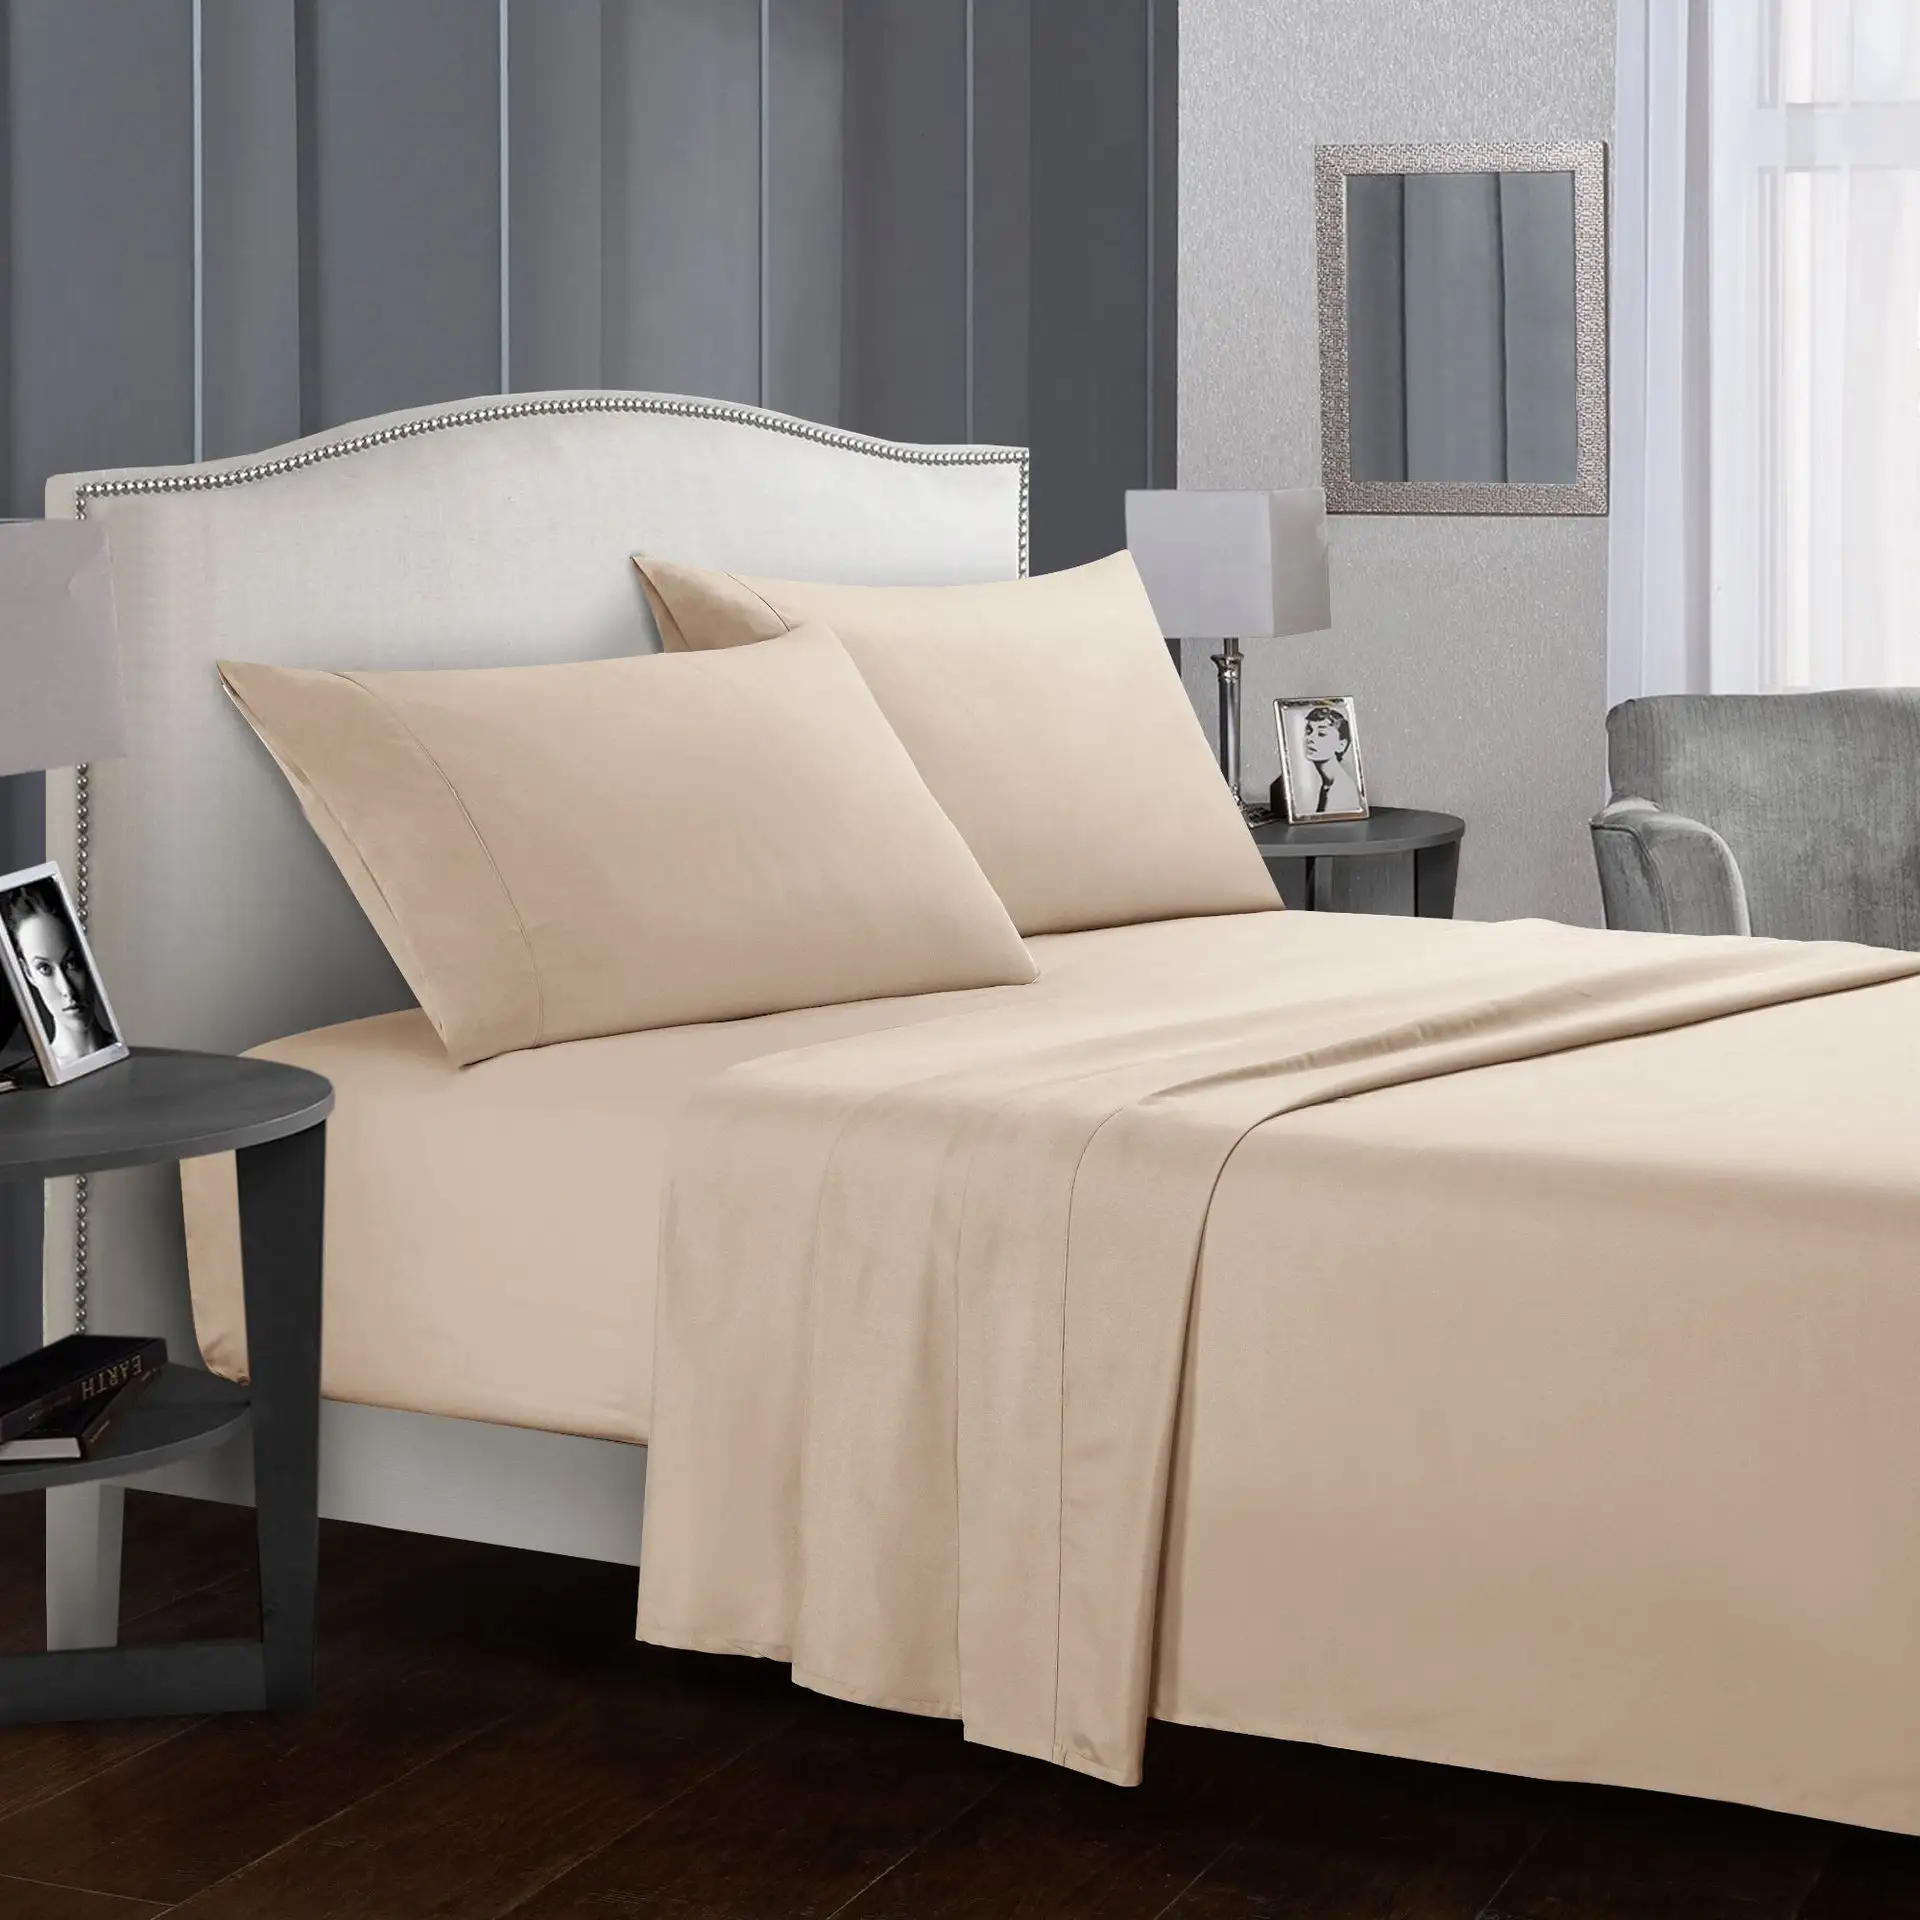 ชุดเครื่องนอนสีขาวสำหรับโรงแรมชุดผ้าปูที่นอนขนาดคิงไซส์ทำจากผ้าฝ้ายจาก100% USA